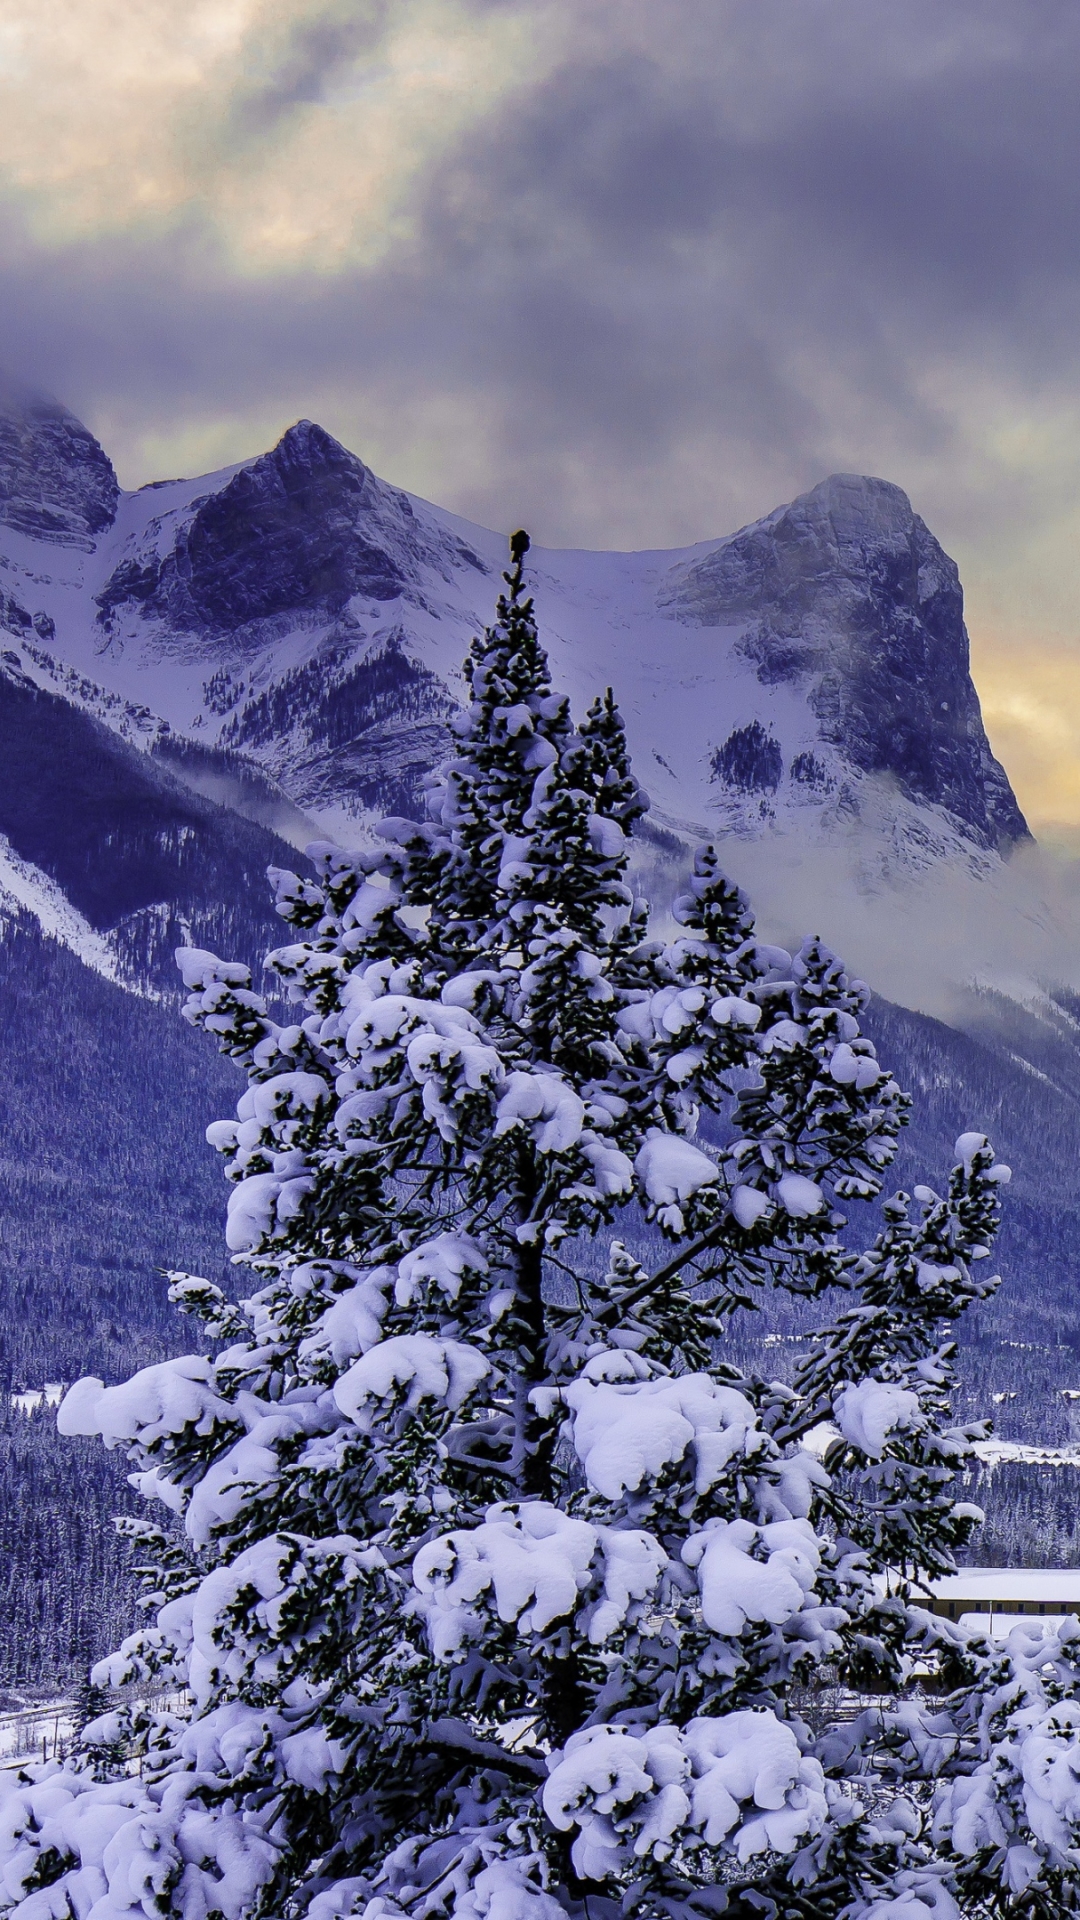 Descarga gratuita de fondo de pantalla para móvil de Invierno, Nieve, Montaña, Canadá, Árbol, Fotografía, Alberta, Parque Nacional Banff.